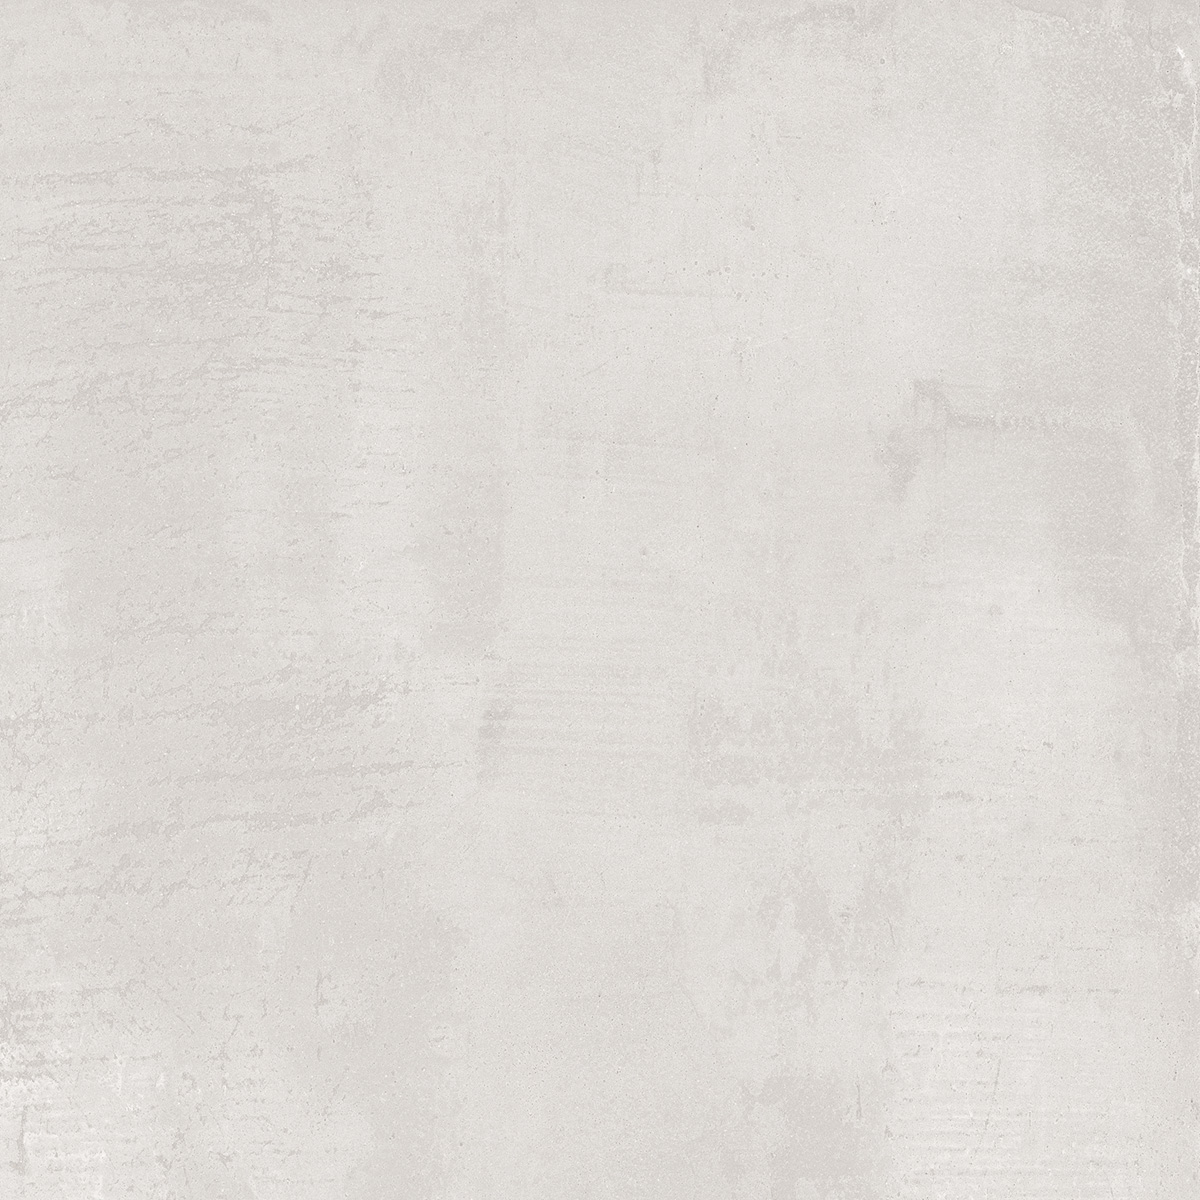 Jabo Tegelsample:  Beton Cire Bercy Bianco vloertegel wit 60x60cm gerectificeerd